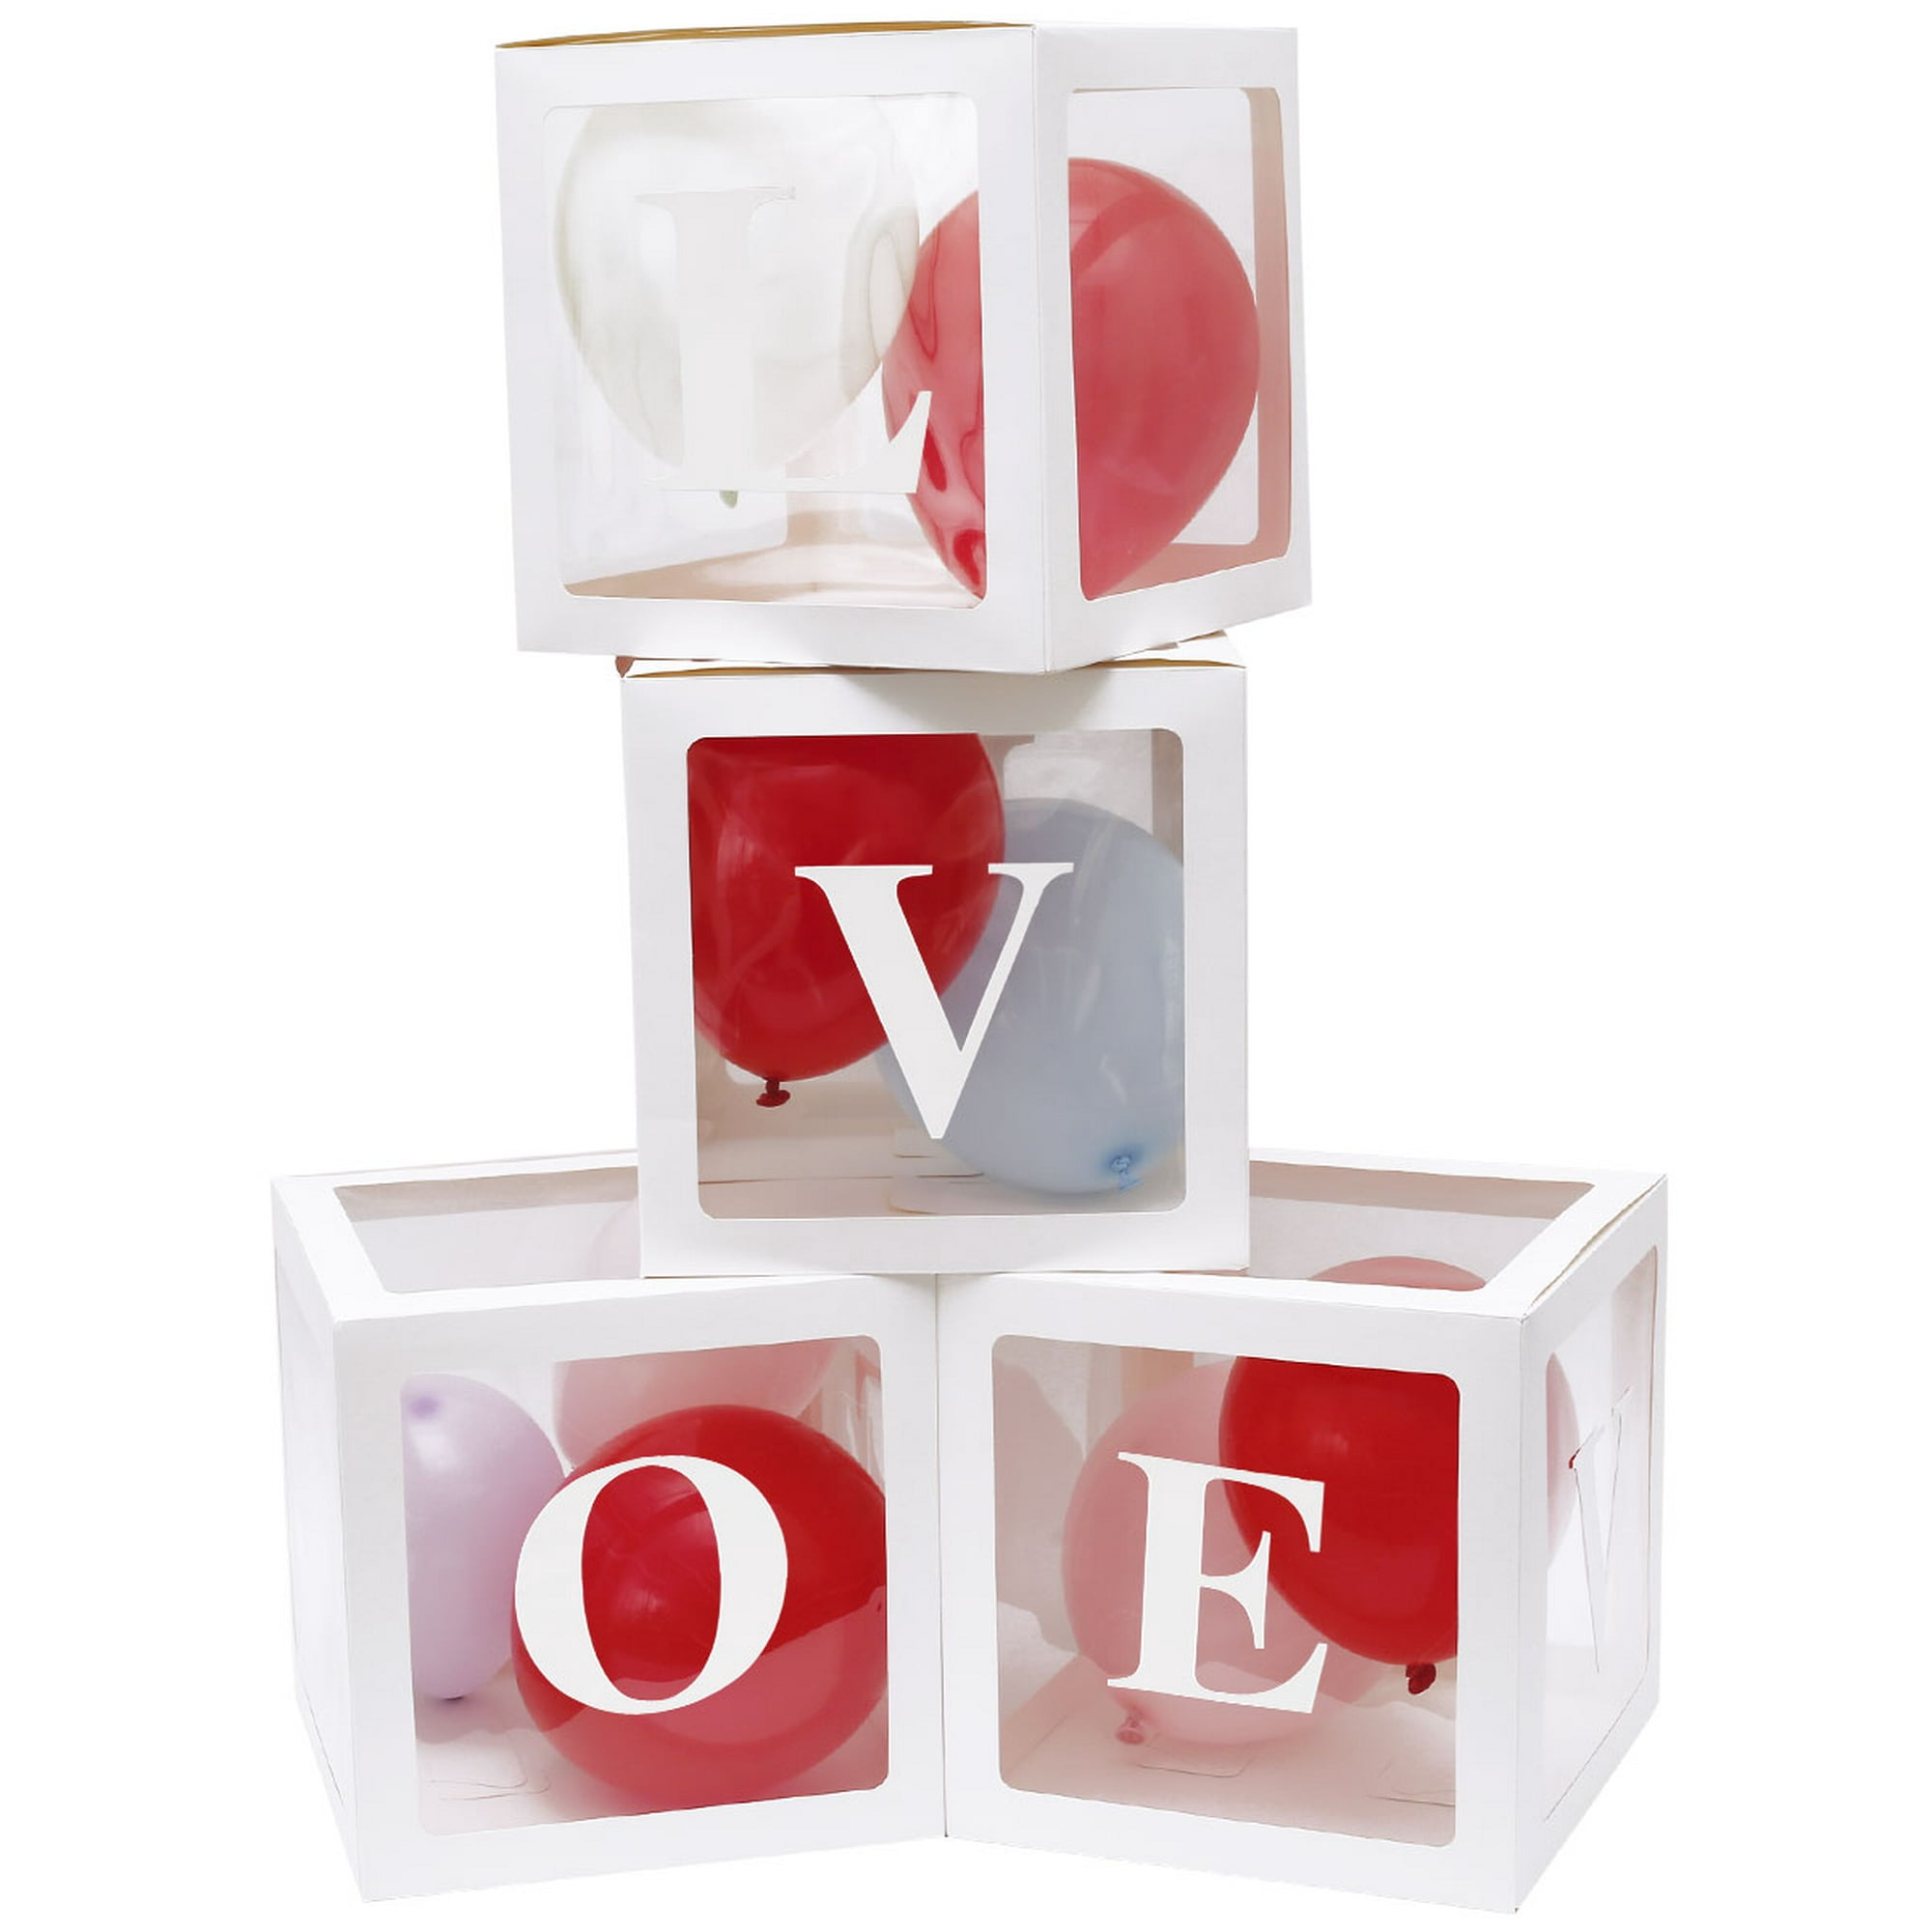 Cajas de luces con letras para decoración de eventos, hogar y mas.